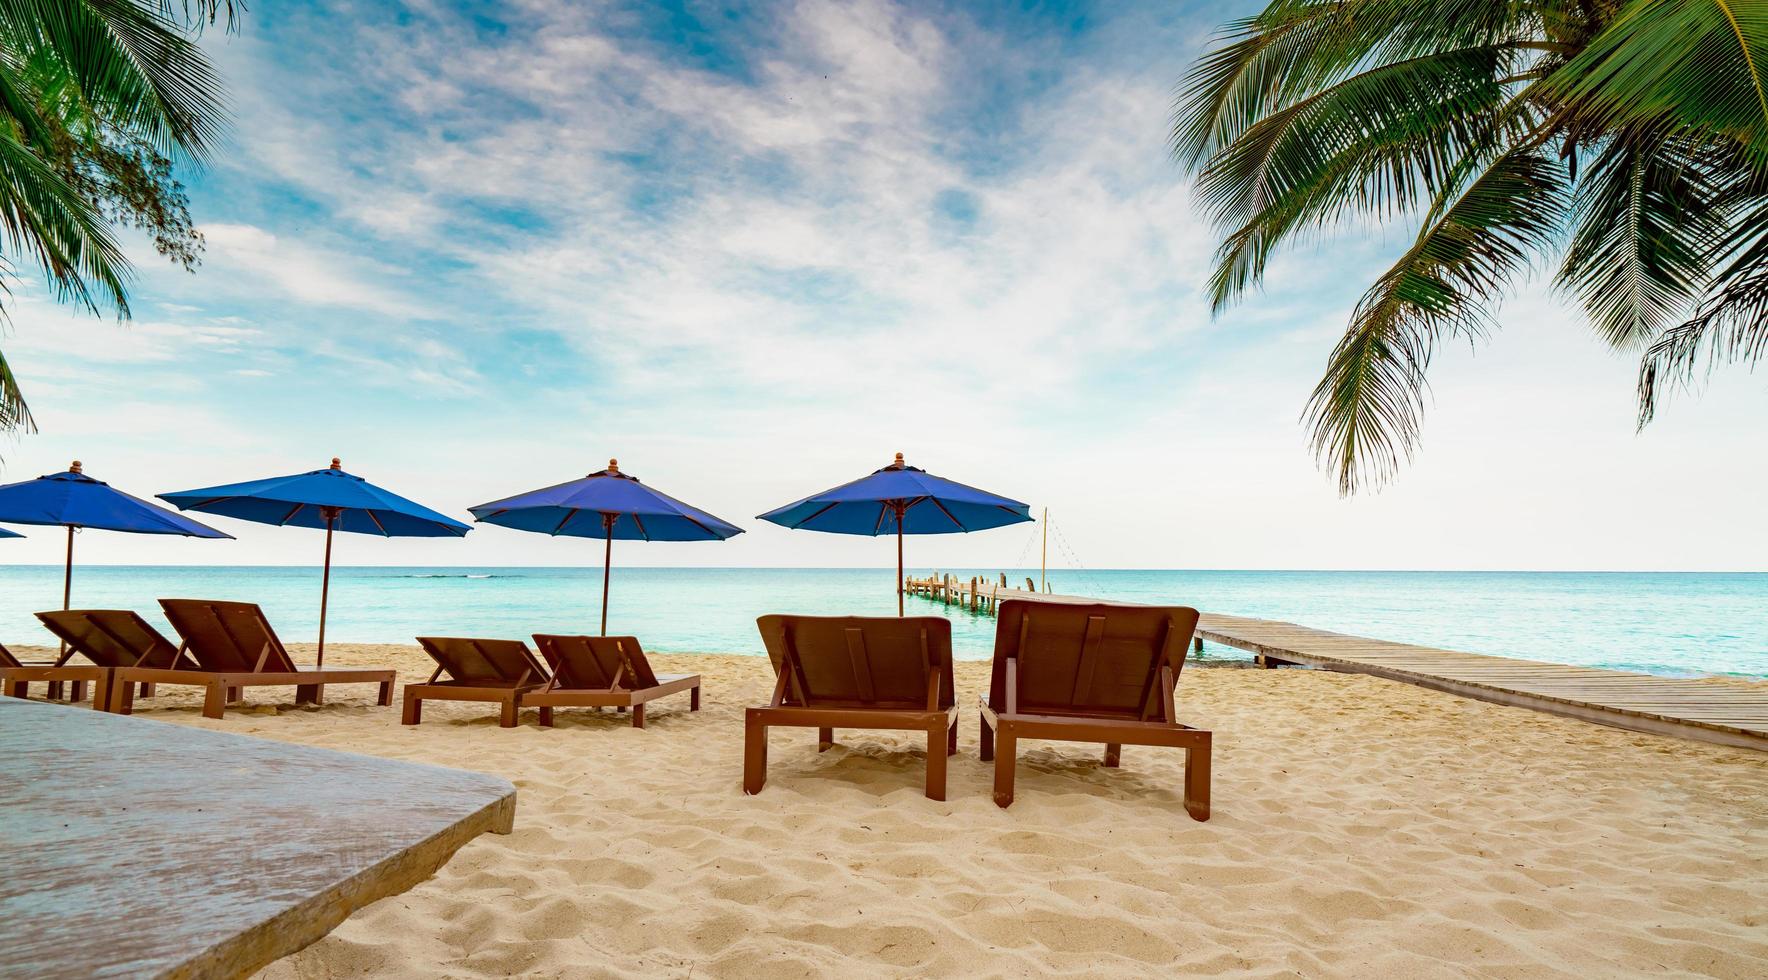 silla de playa de madera y sombrilla en la playa de arena del resort al lado del puente. viajes de vacaciones de verano. viajes de vacaciones tropicales. tres parejas de tumbonas y cocoteros con cielo azul y nubes blancas. foto